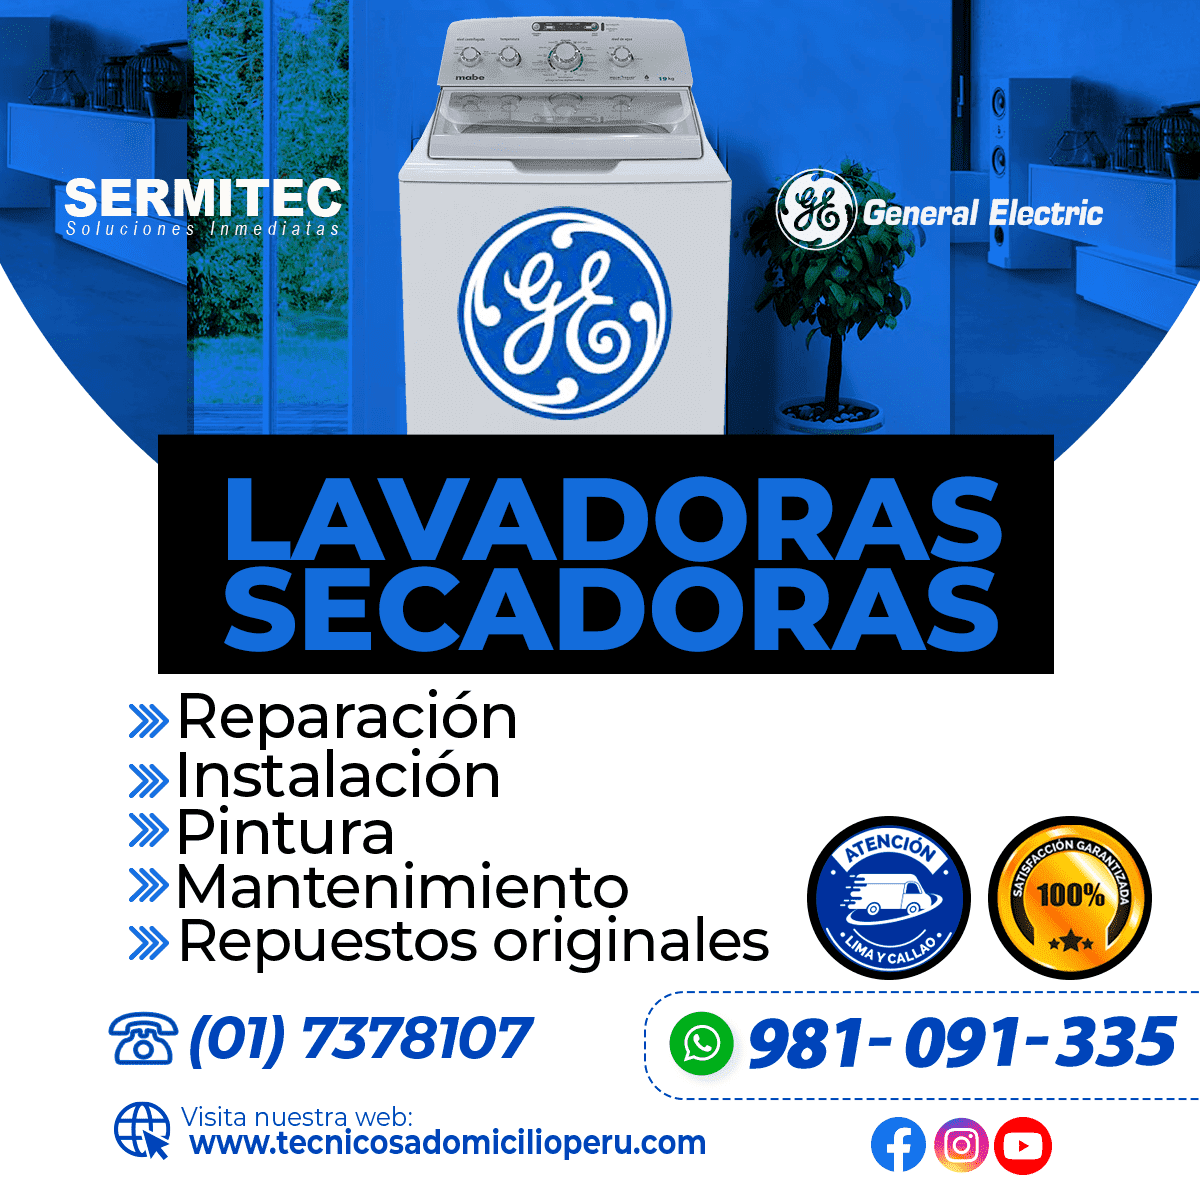 GENERAL ELECTRIC Reparación de Lavadoras 981091335 CARABAYLLO